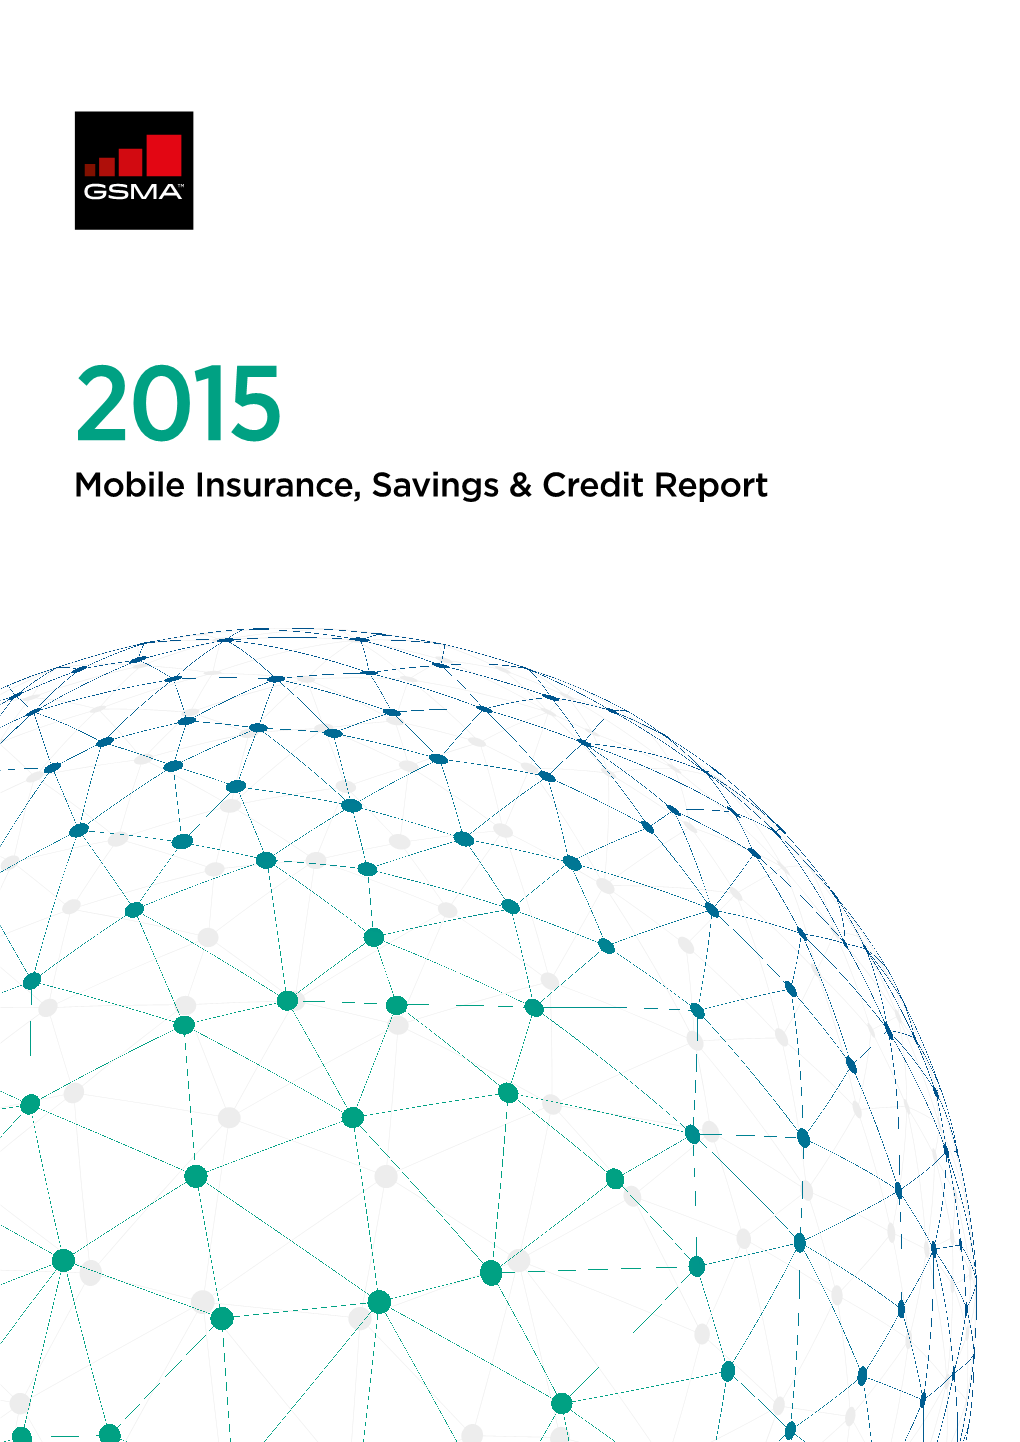 “2015 Mobile Insurance, Savings & Credit Report”